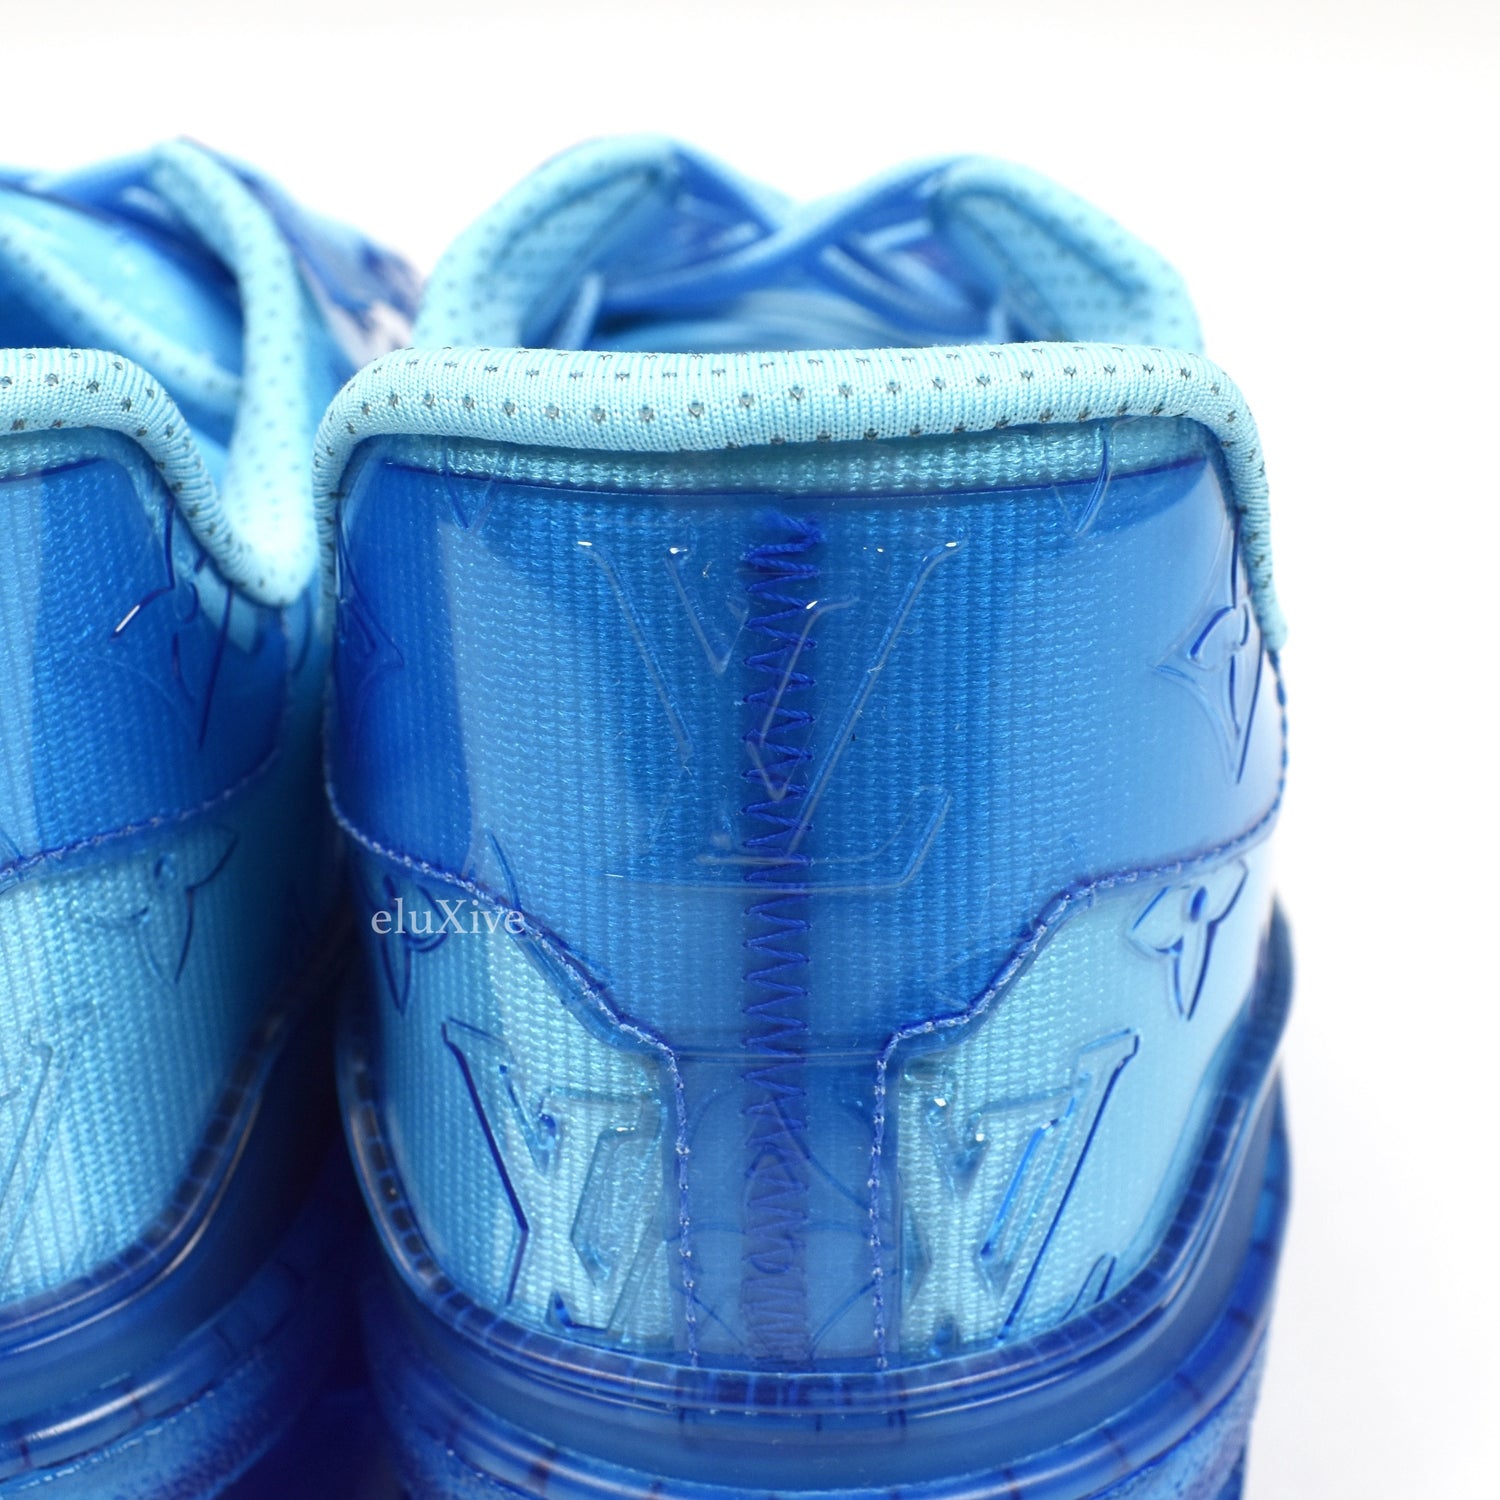 Louis Vuitton Men's Transparent Clear Blue Trainer sneakers